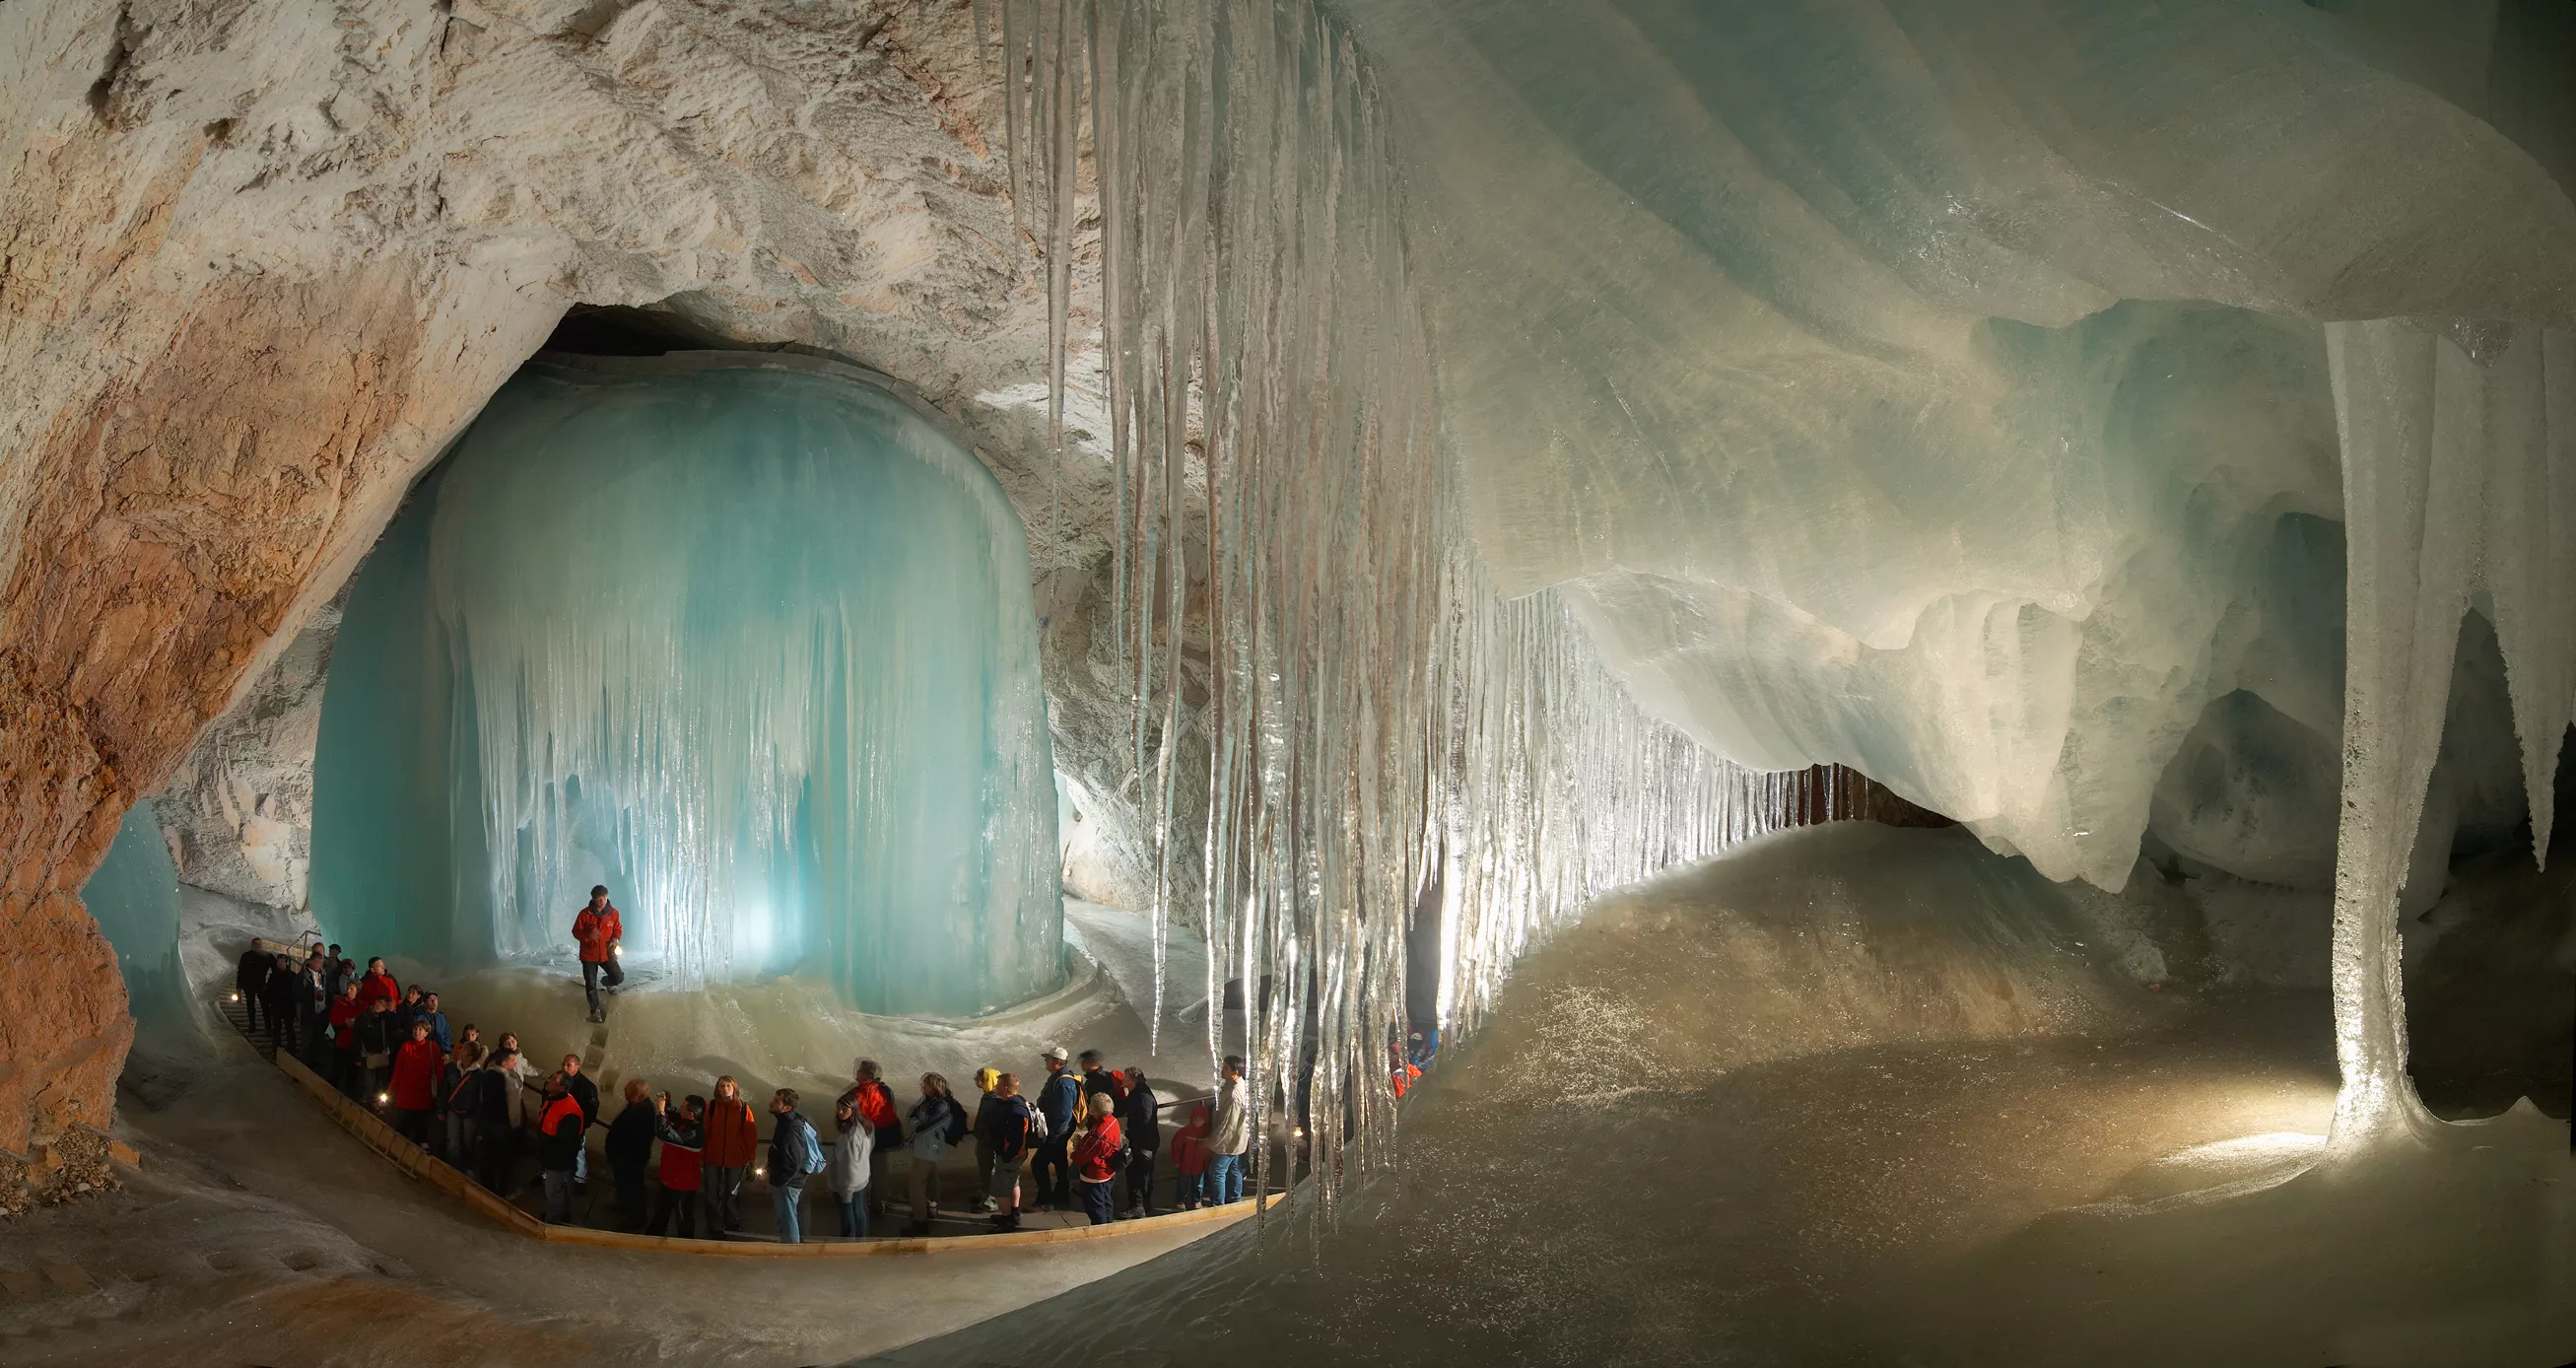 Eisriesenwelt Werfen in Austria, Europe | Caves & Underground Places - Rated 4.1